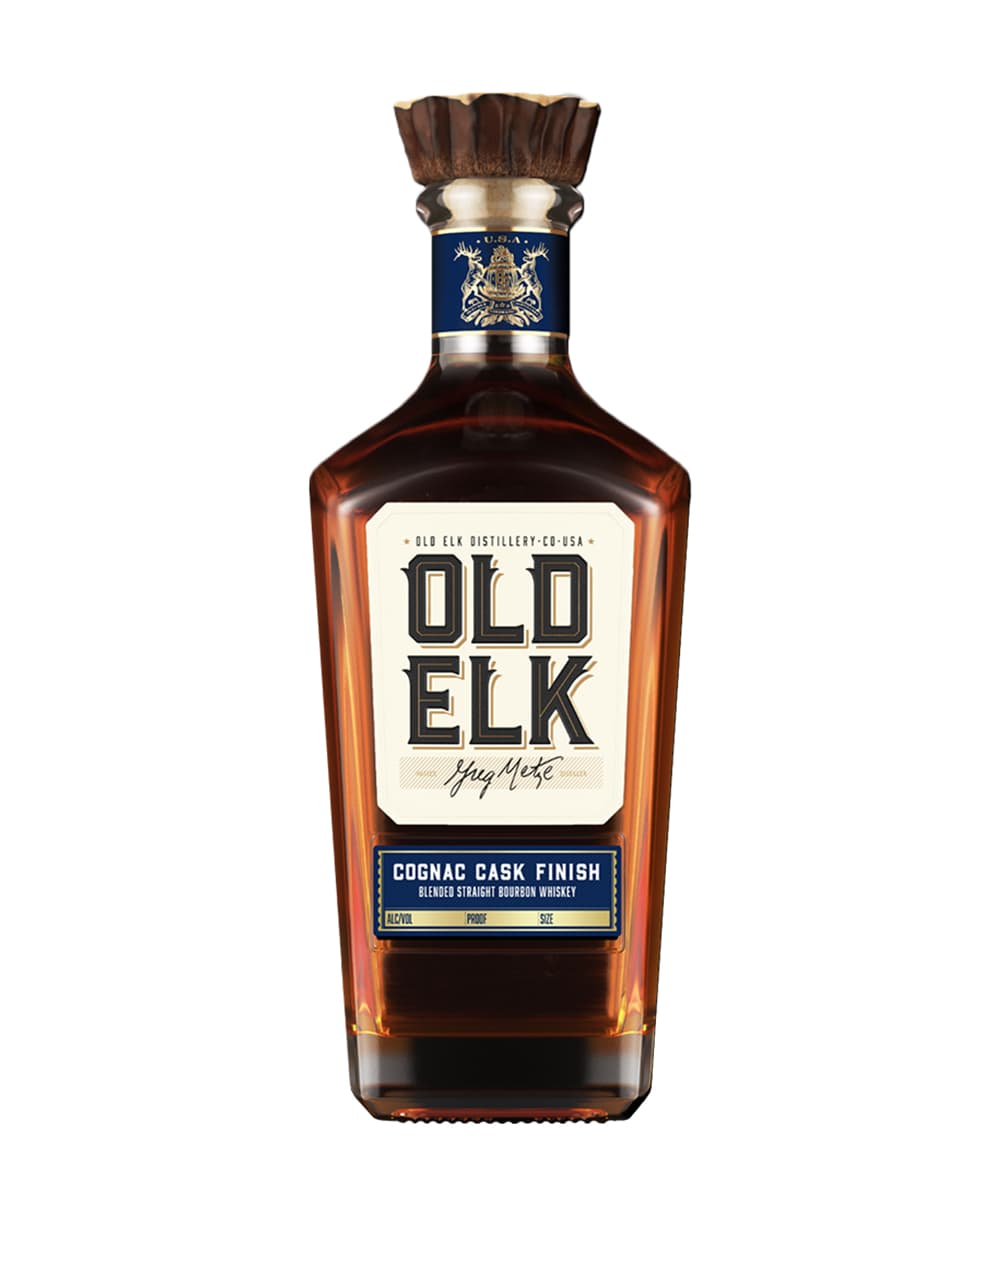 Old Elk Cognac Cask Finish Blended Straight bourbon Whiskey